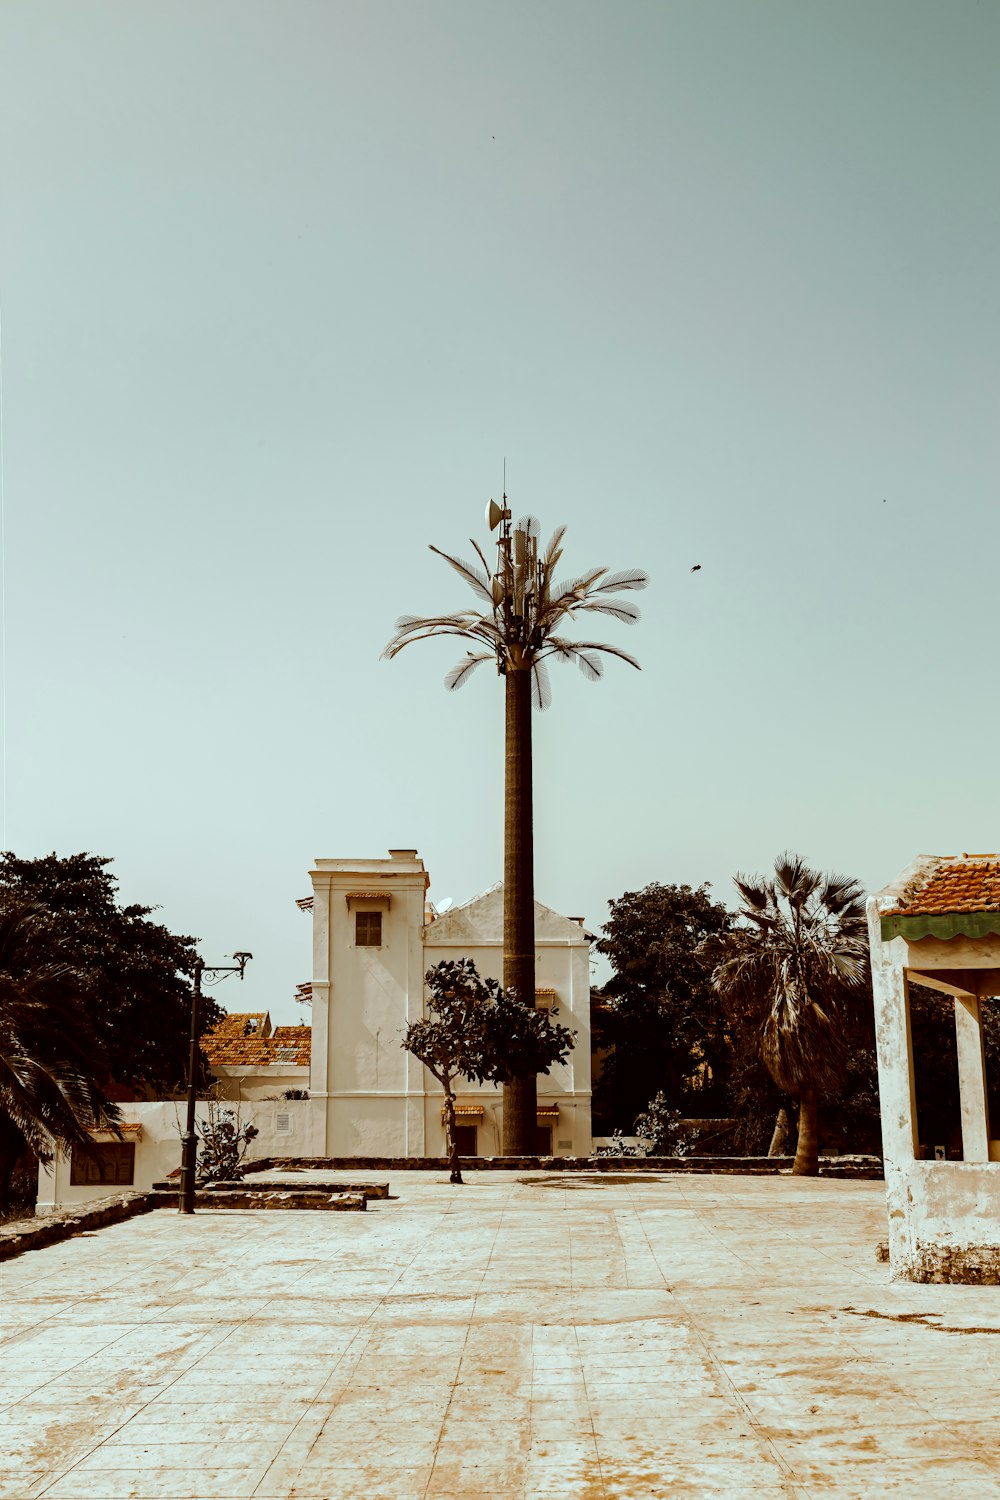 Eine Palme vor einem weißen Gebäude